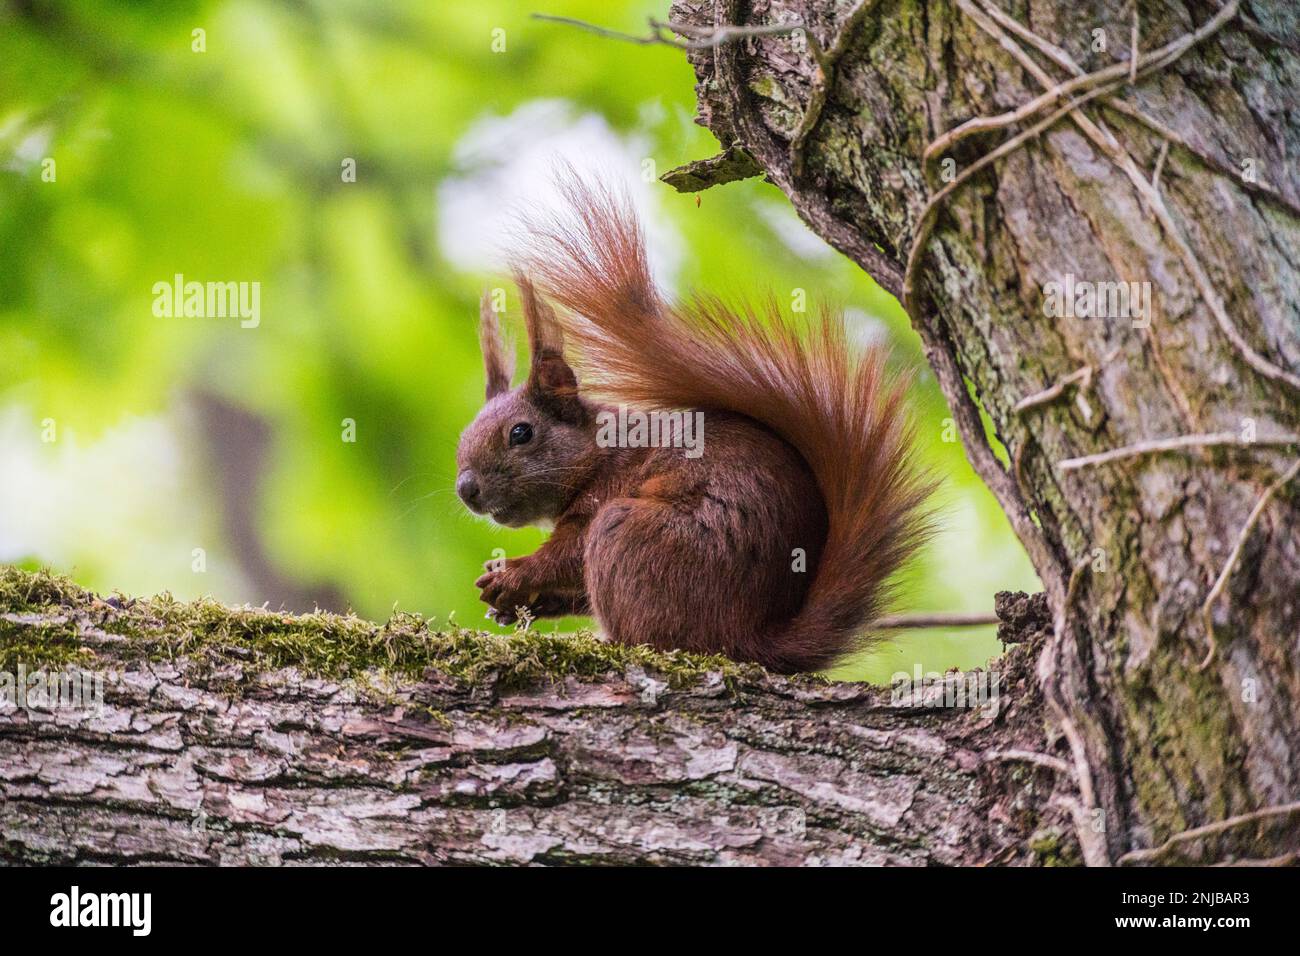 Eurasisches Eichhörnchen auf Ast sitzend und eine Eichel futternd - Eurasian red squirrel sitting on branch and eating an acorn, background blurred Stock Photo